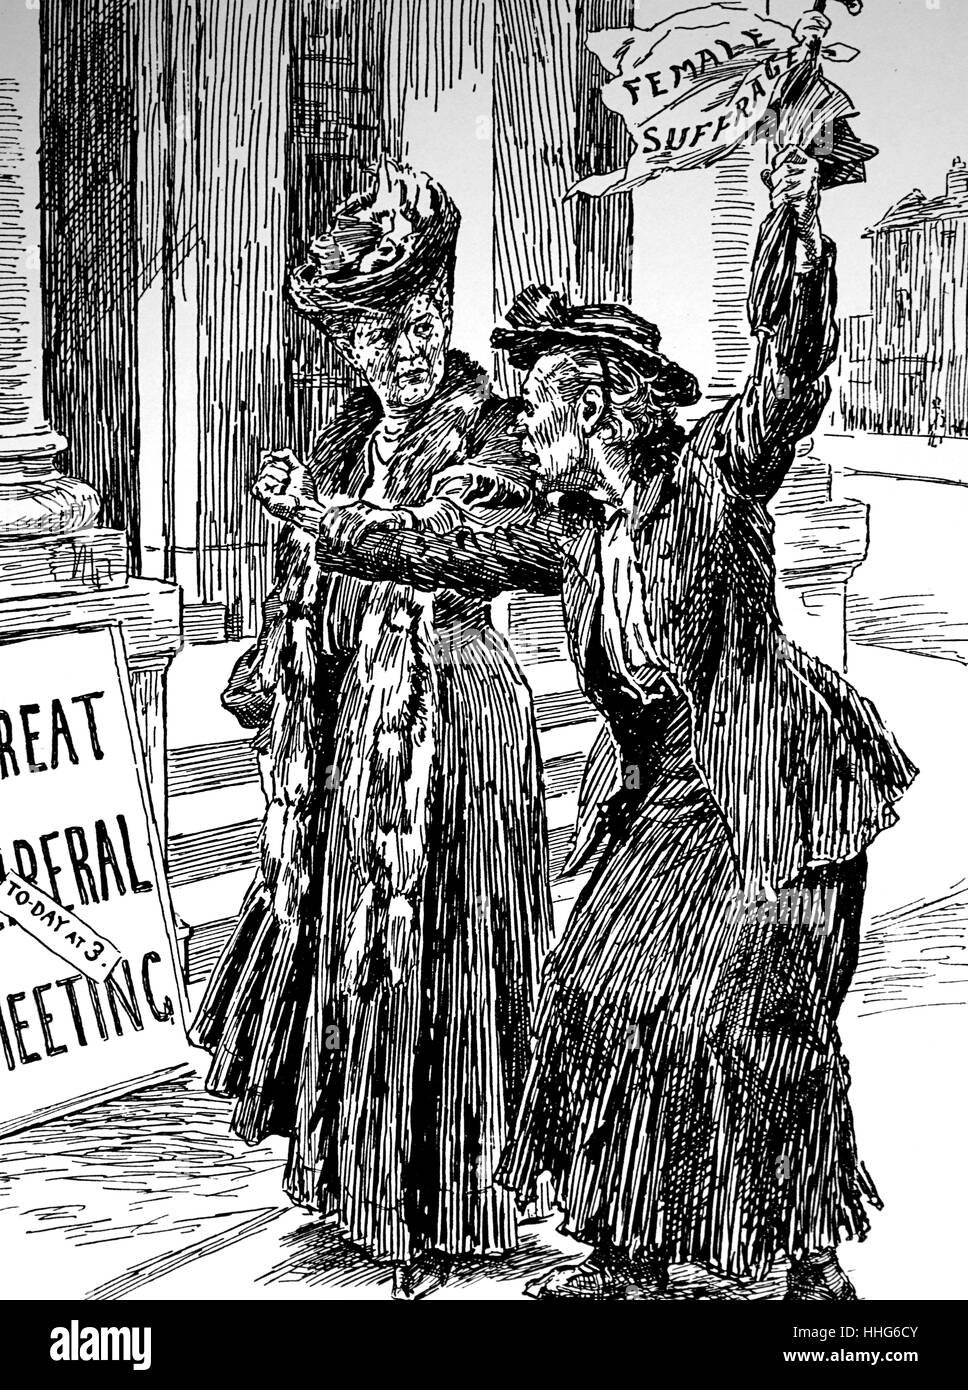 Le suffrage des femmes, suffragette modérée anxieux au cas où sa SŒUR HURLANTE, le militant suffragette, entrave la lutte pour obtenir le droit de vote pour les femmes britanniques, cartoon Bernard Partridge. Banque D'Images